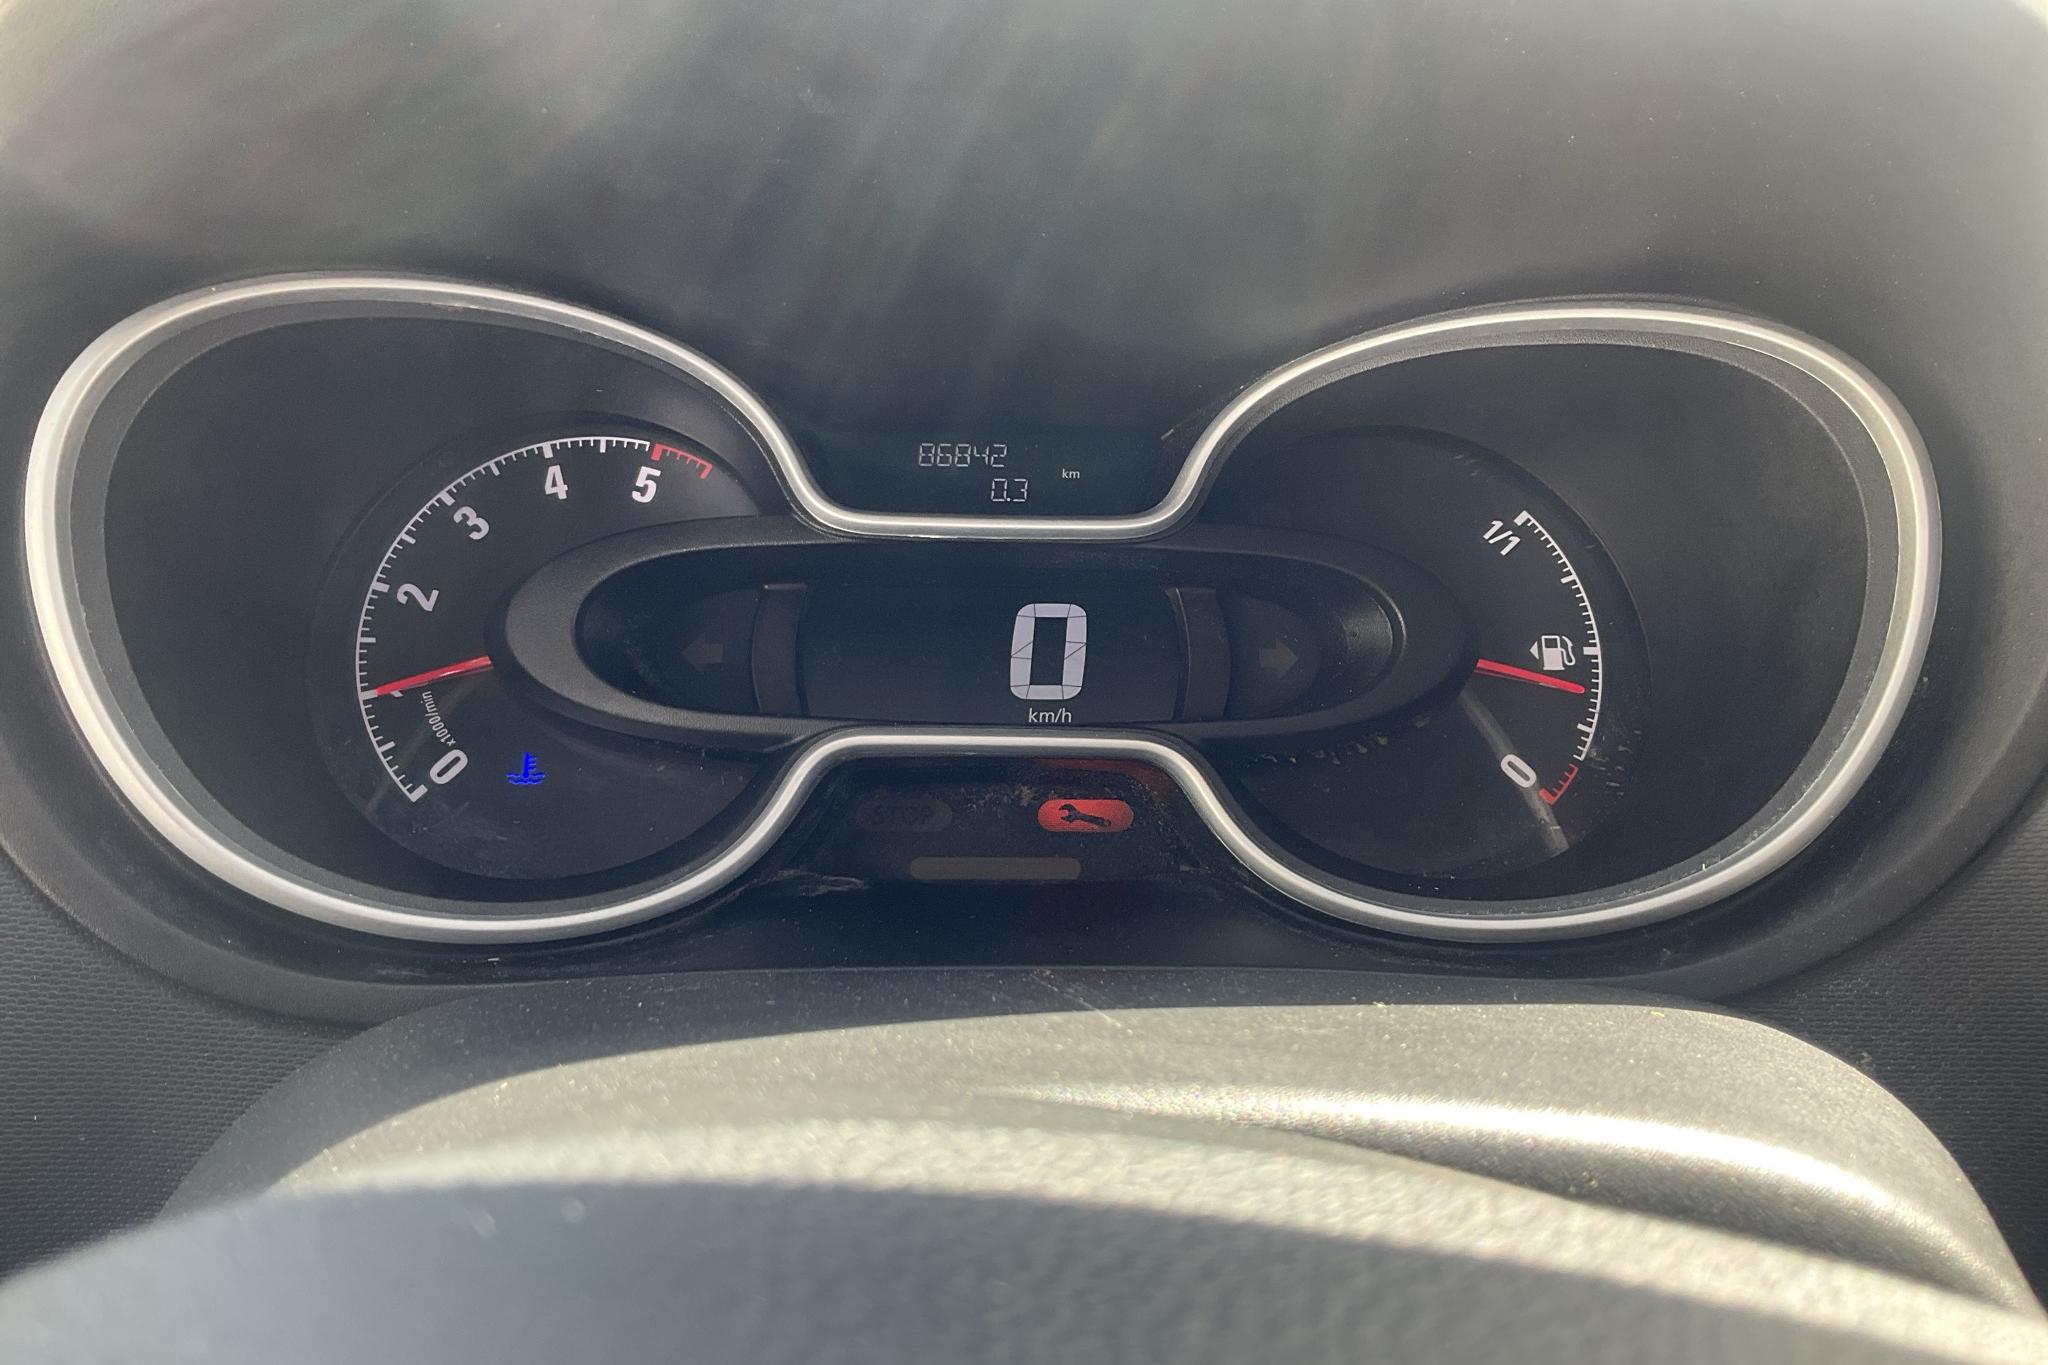 Opel Vivaro 1.6 BITURBO (145hk) - 86 850 km - Manual - red - 2018